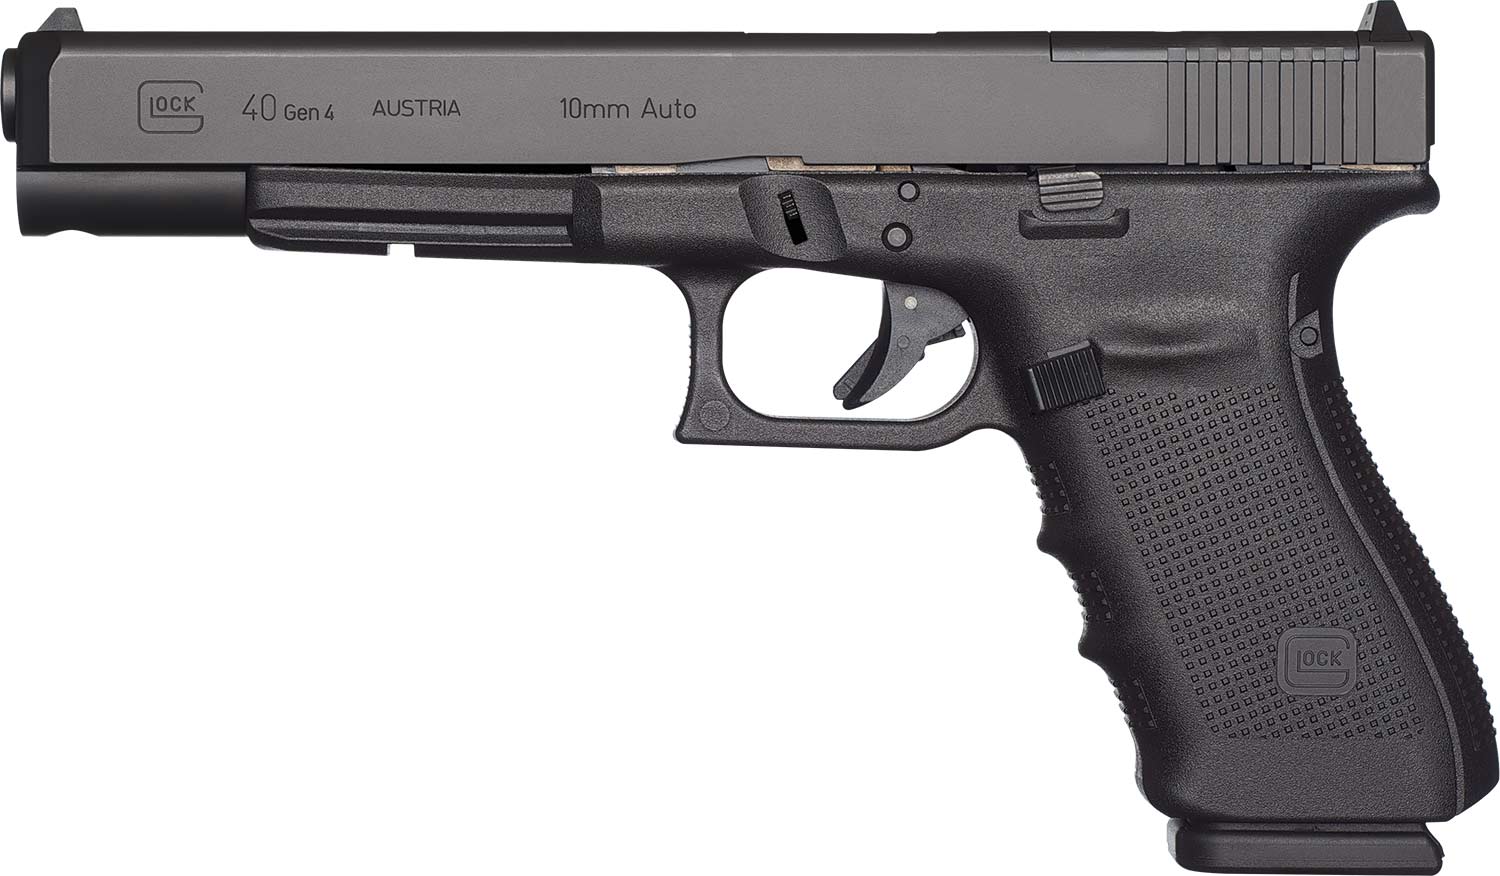 The Glock G40 handgun on a white background.